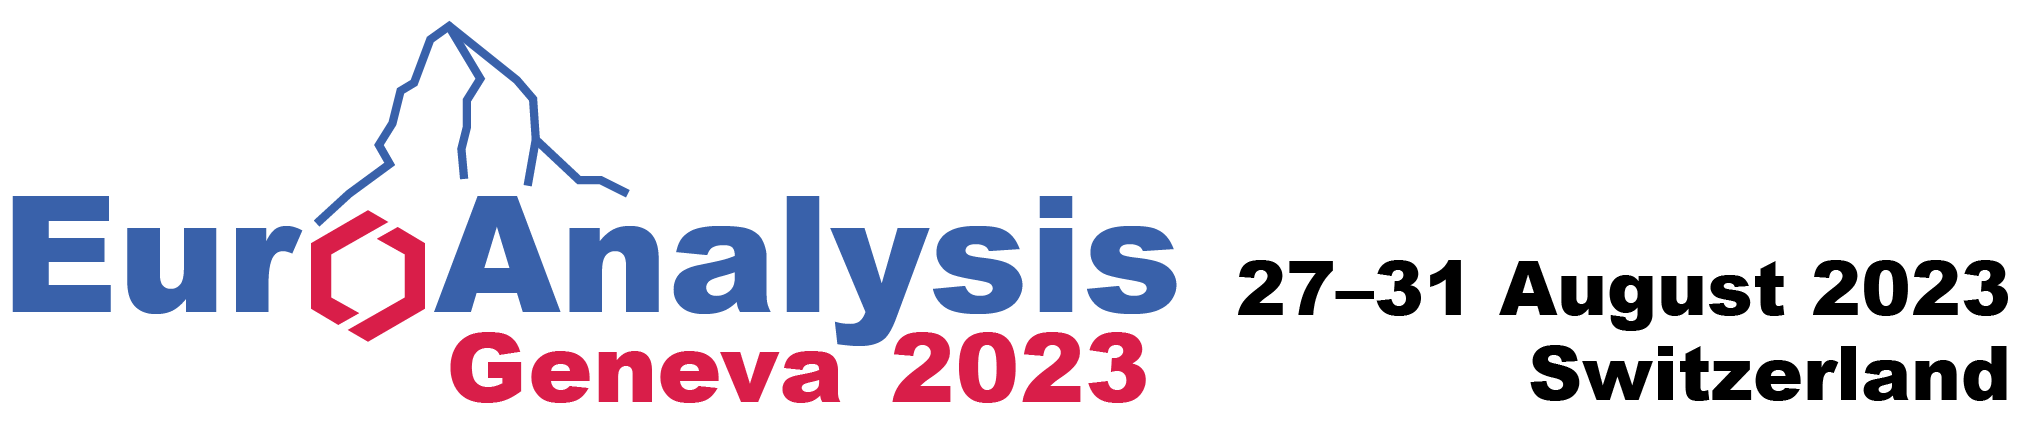 2023  Euroanalysis.png